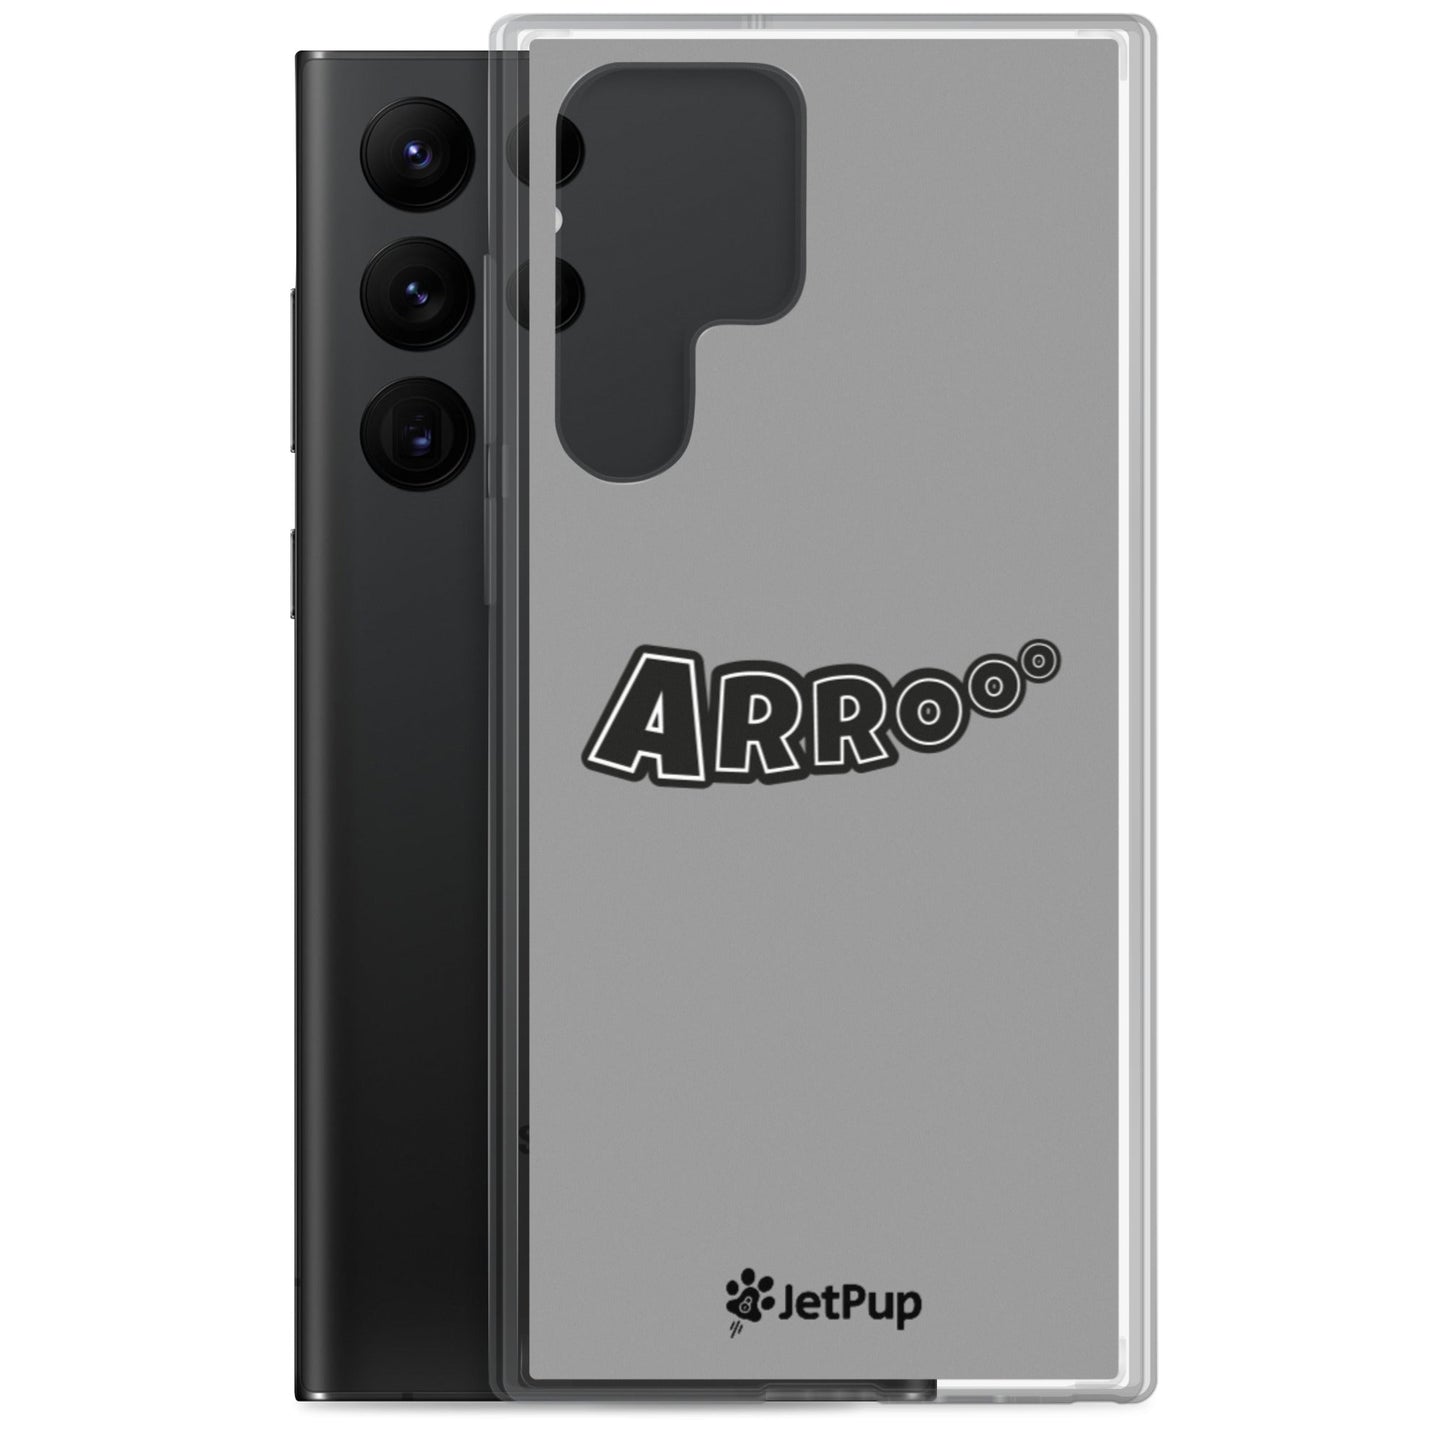 Arrooo Samsung Case - Grey - JetPup